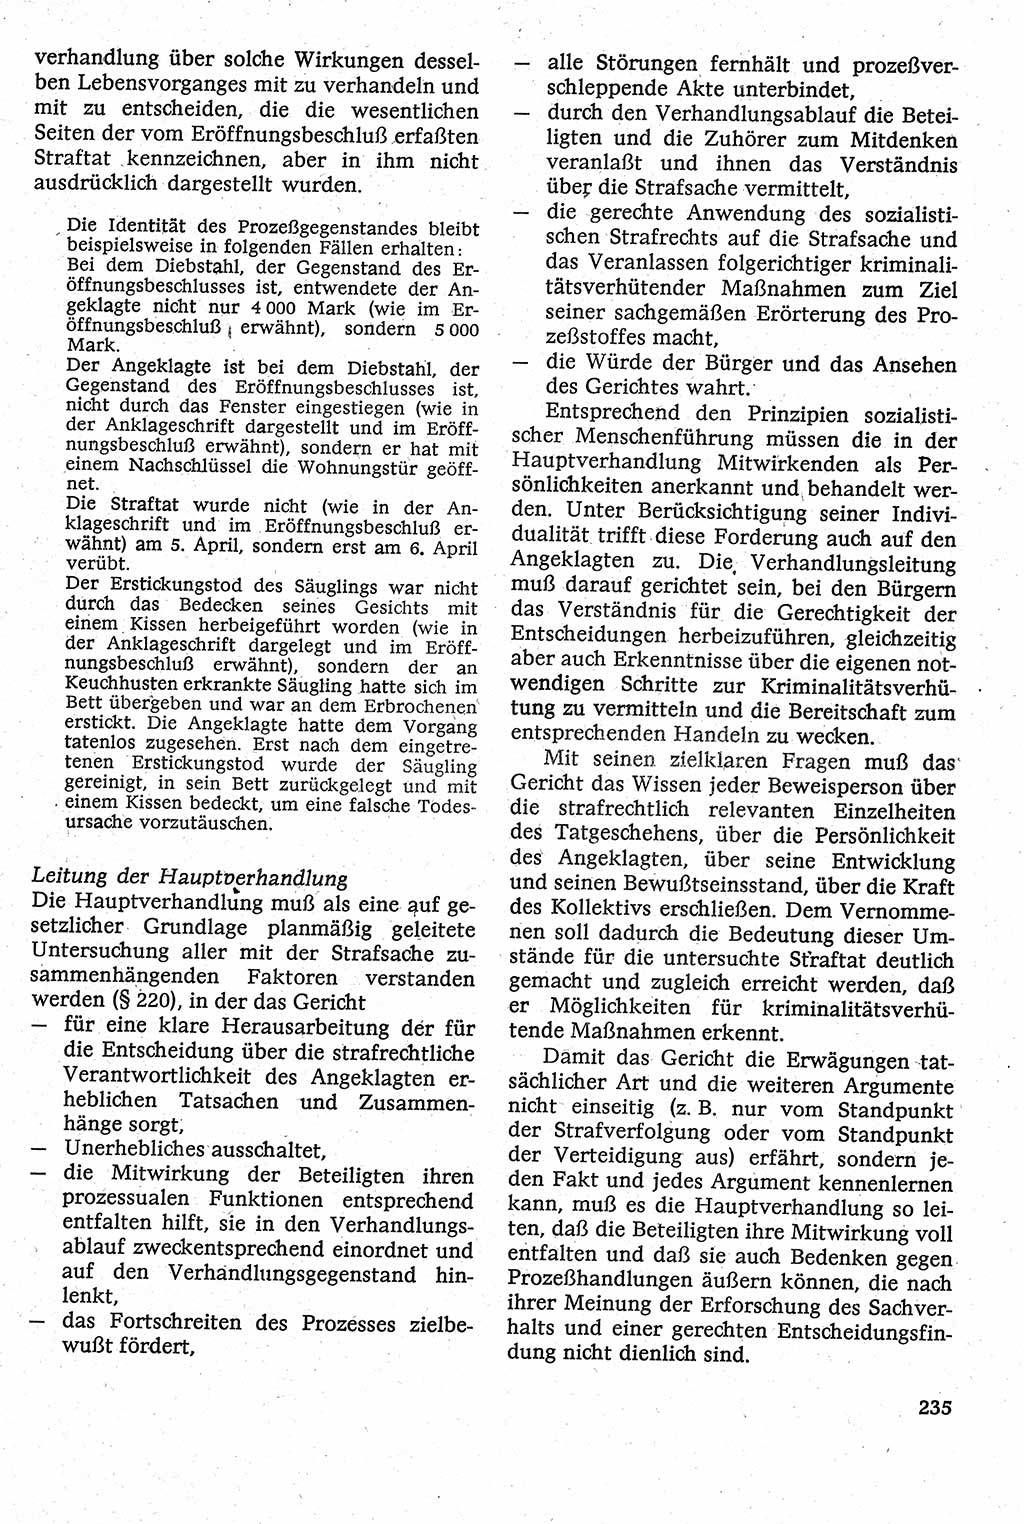 Strafverfahrensrecht [Deutsche Demokratische Republik (DDR)], Lehrbuch 1982, Seite 235 (Strafverf.-R. DDR Lb. 1982, S. 235)